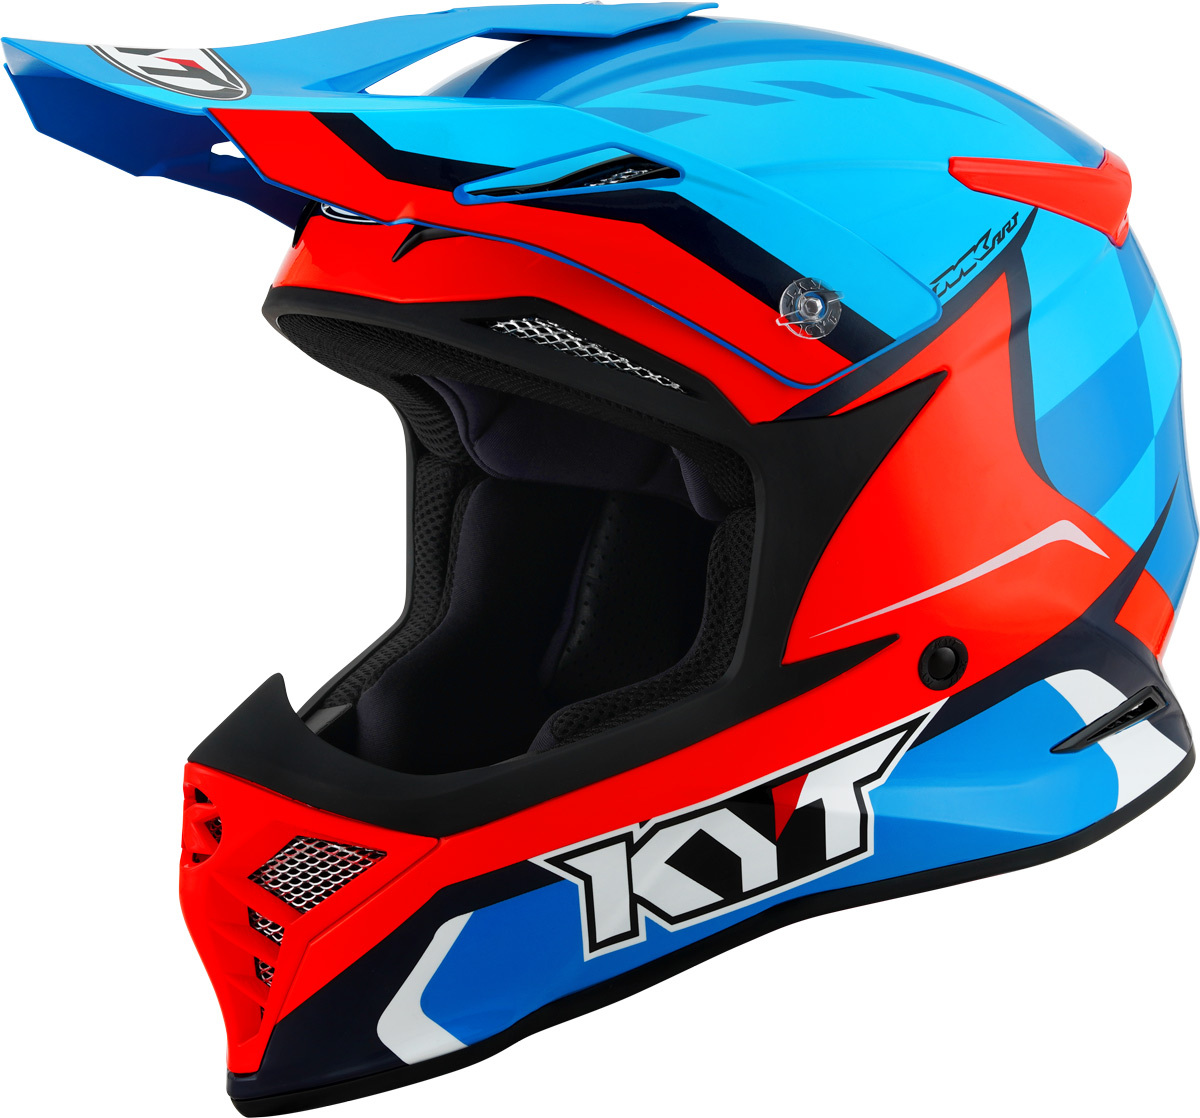 KYT Skyhawk Glowing Motocross Helmet, red-blue, Size S, S Red Blue unisex